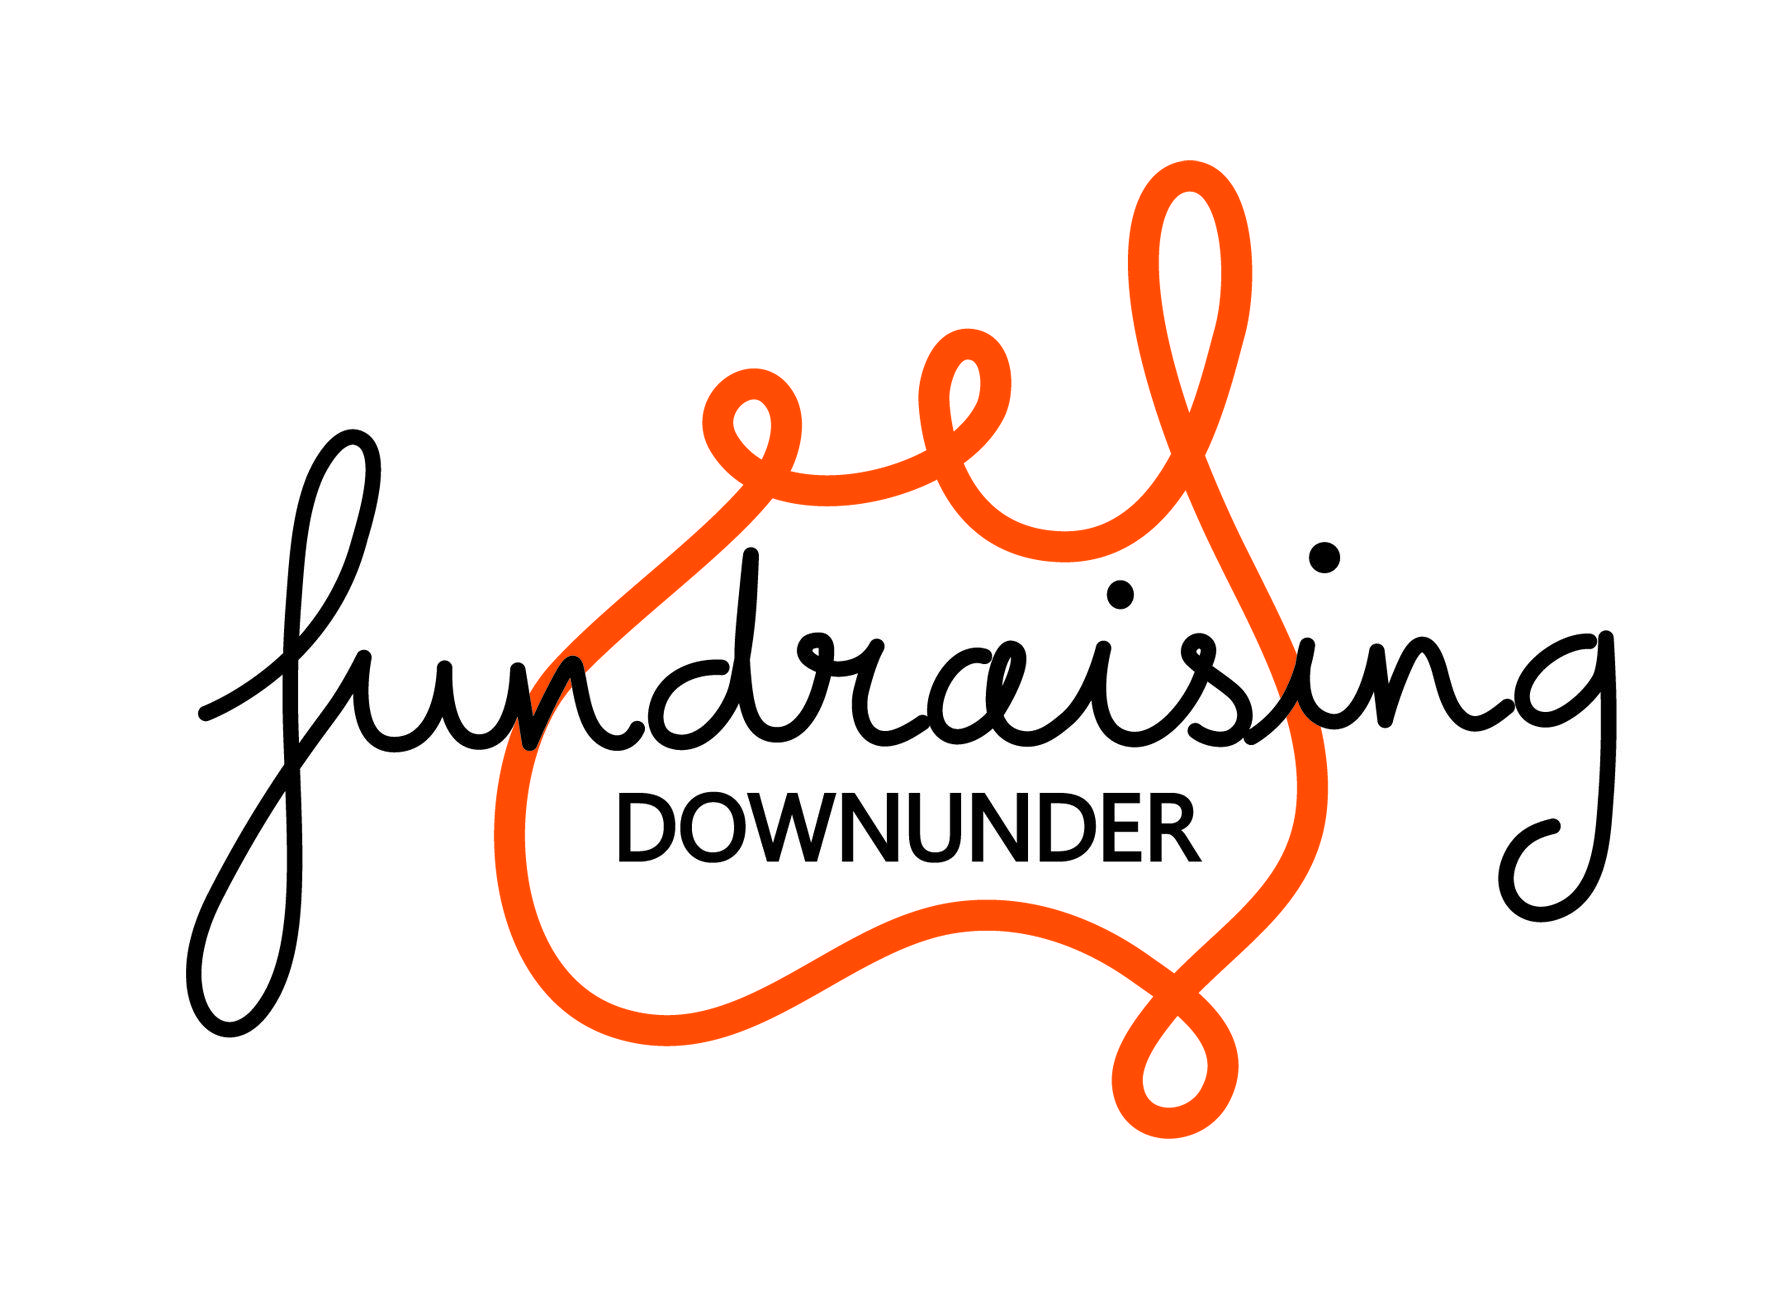 Fundraising Logo - Fundraising Downunder Logo